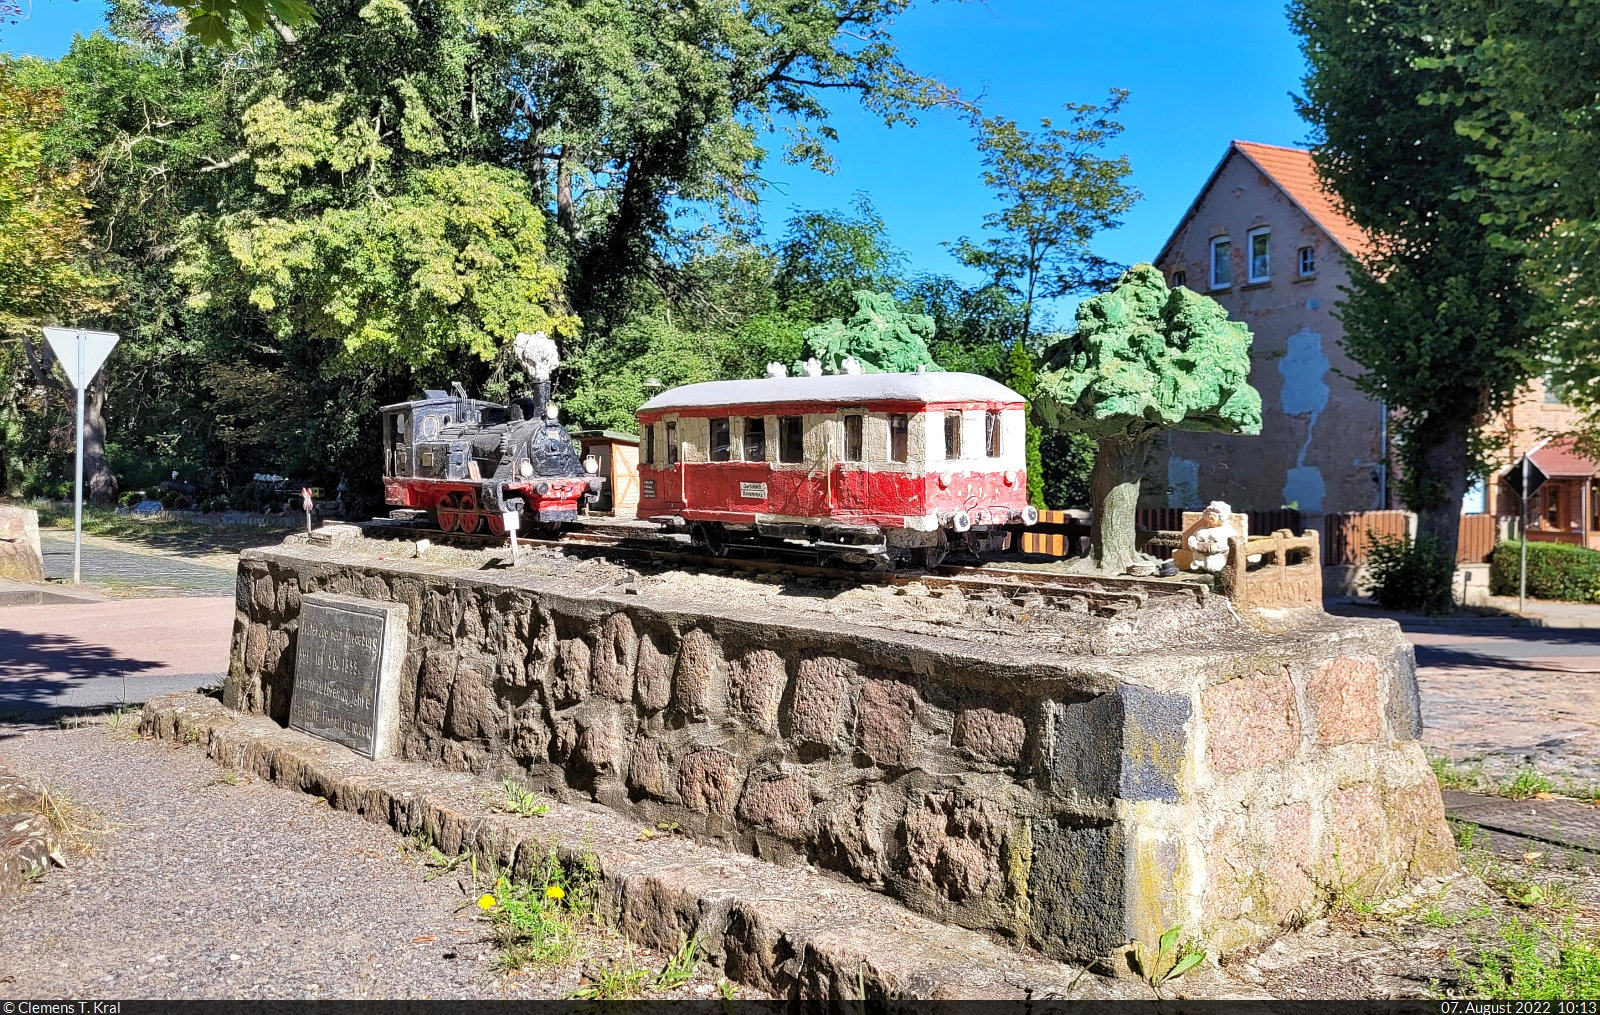 Beton-Modellbahn in Gerbstedt
Dieses Modell zeigt einen unbekannten Triebwagen als  erster Zug nach Friedeburg  und die Lok 5b 1899 der ehemaligen Halle-Hettstedter-Eisenbahn (HHE).

🧰 Verein Freunde der Halle-Hettstedter-Eisenbahn e.V.
🕓 7.8.2022 | 10:13 Uhr